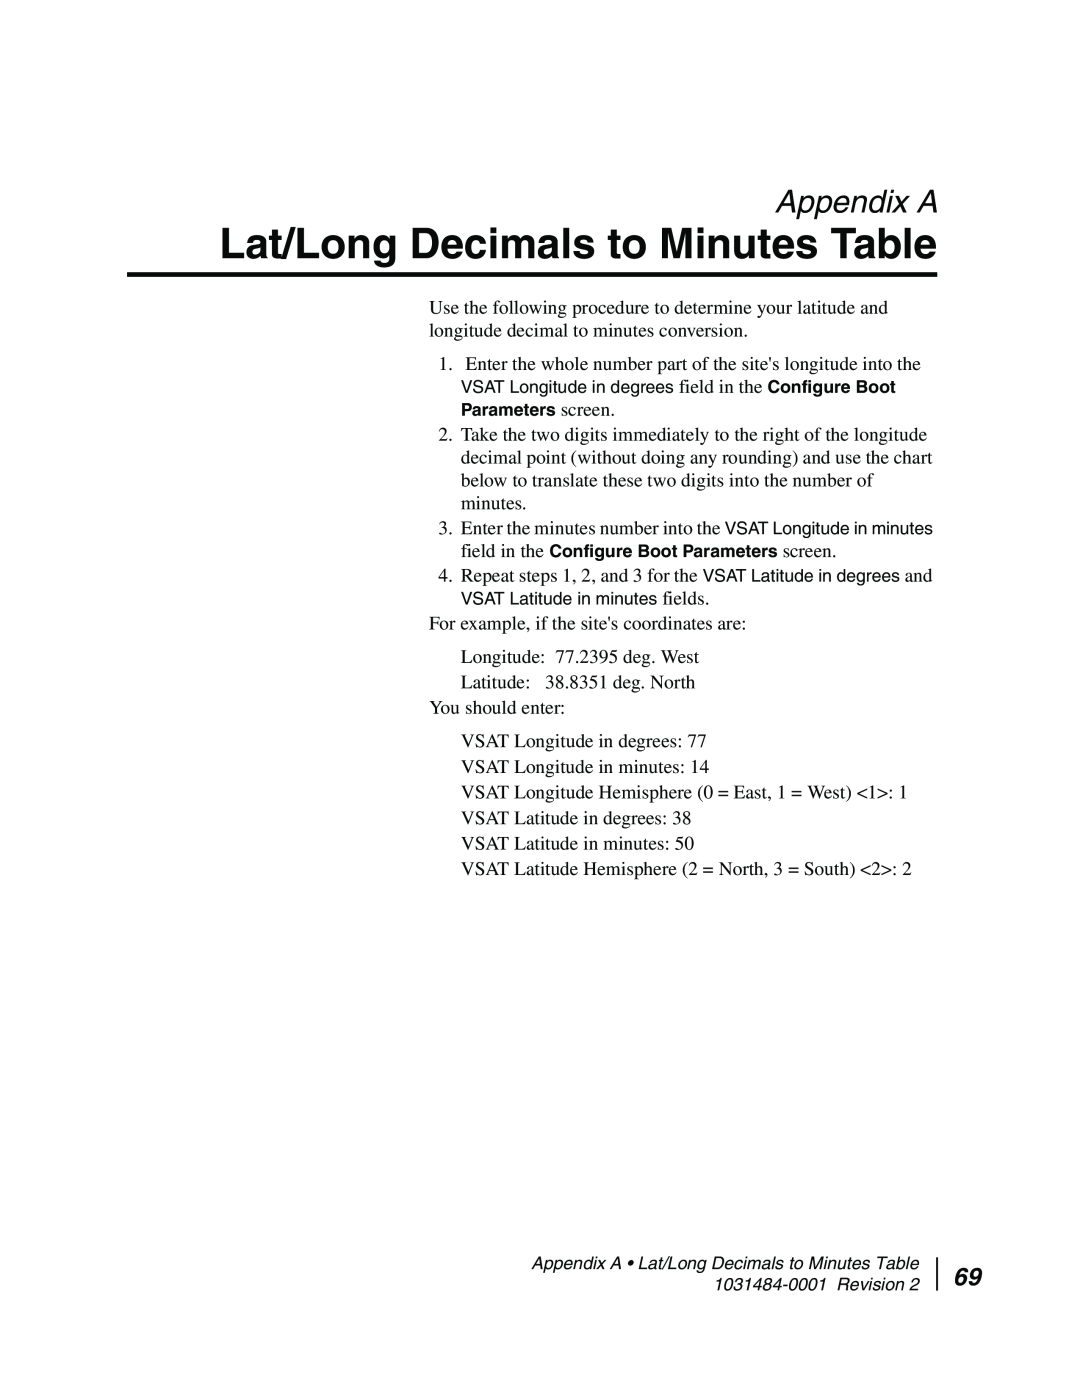 Hughes DW4020 manual Lat/Long Decimals to Minutes Table, Appendix A 